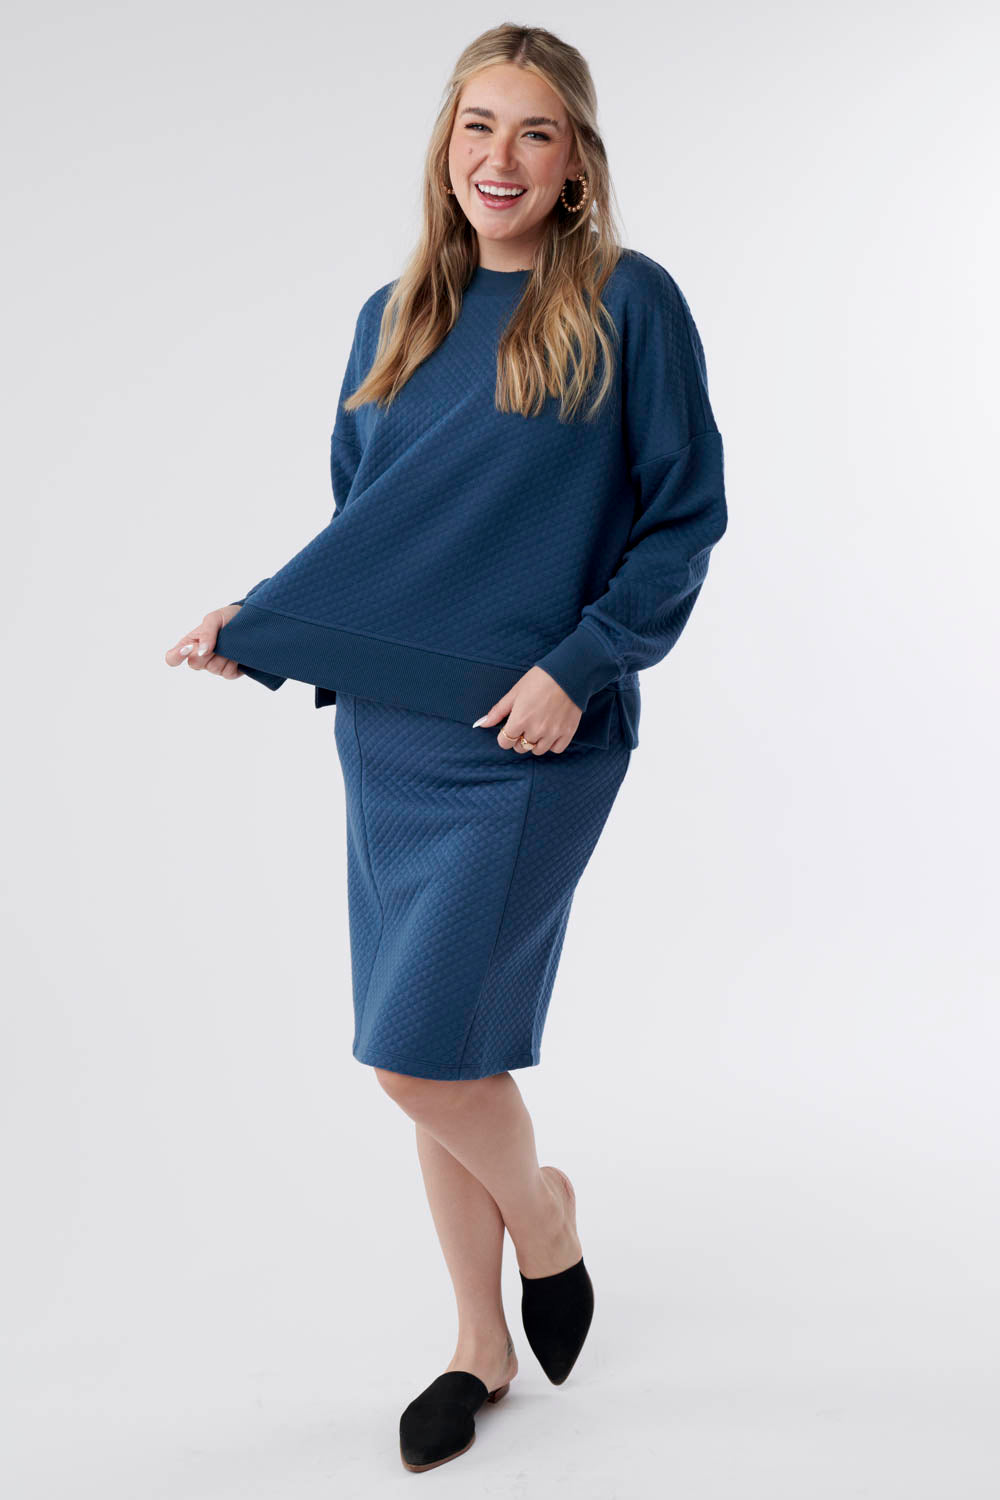 Gabriella Jacquard Knit Sweater Top-Blue